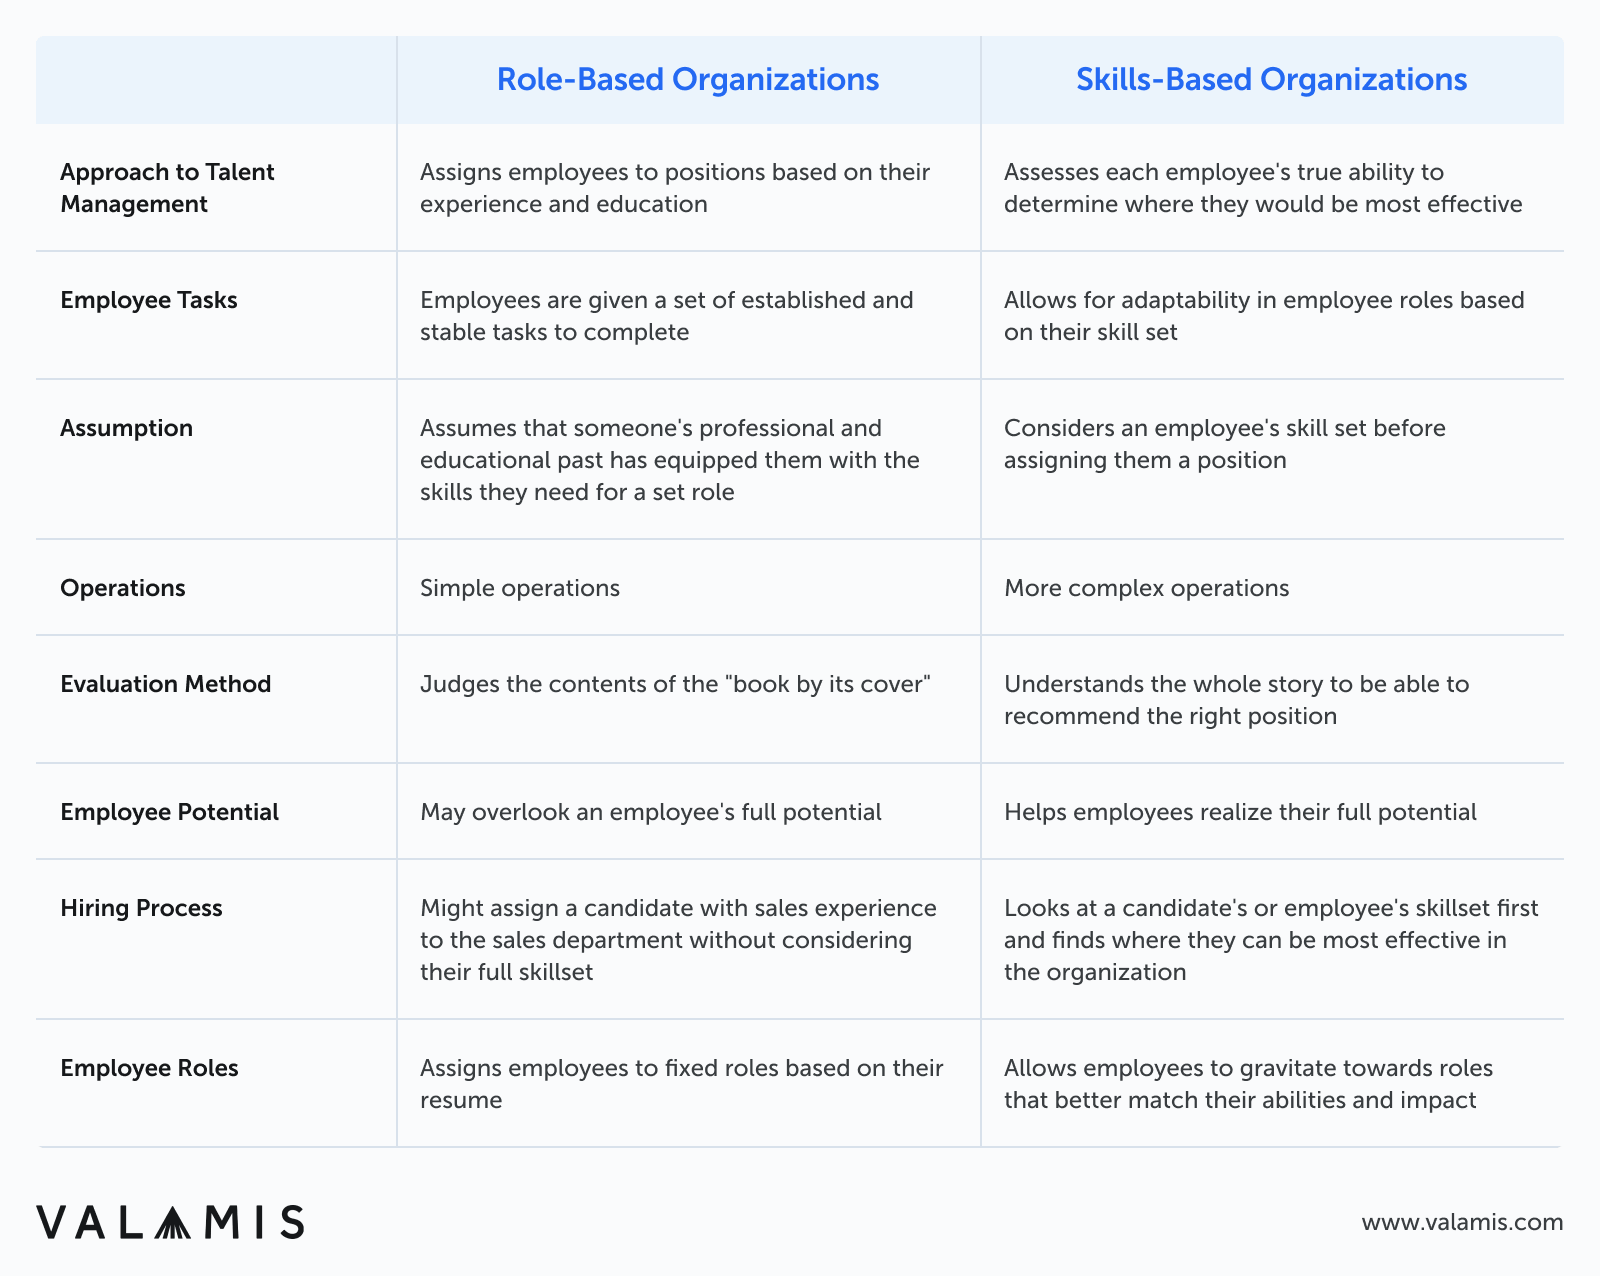 Das Bild zeigt die Liste der Unterschiede zwischen rollenbasierten und kompetenzbasierten Organisationen